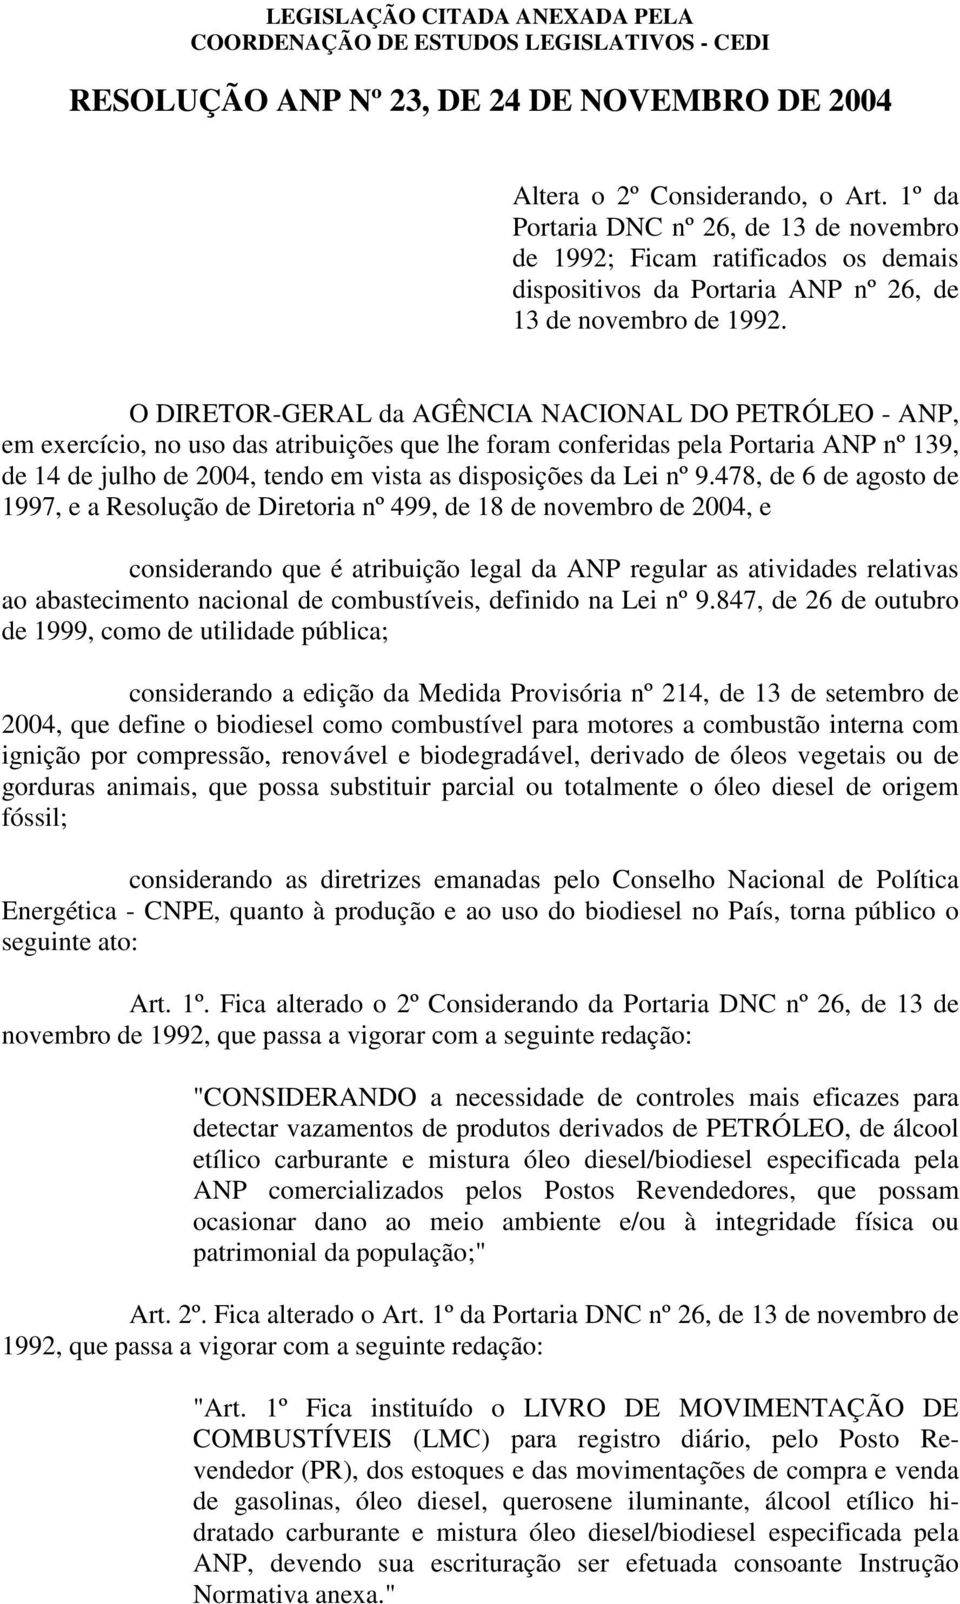 O DIRETOR-GERAL da AGÊNCIA NACIONAL DO PETRÓLEO - ANP, em exercício, no uso das atribuições que lhe foram conferidas pela Portaria ANP nº 139, de 14 de julho de 2004, tendo em vista as disposições da